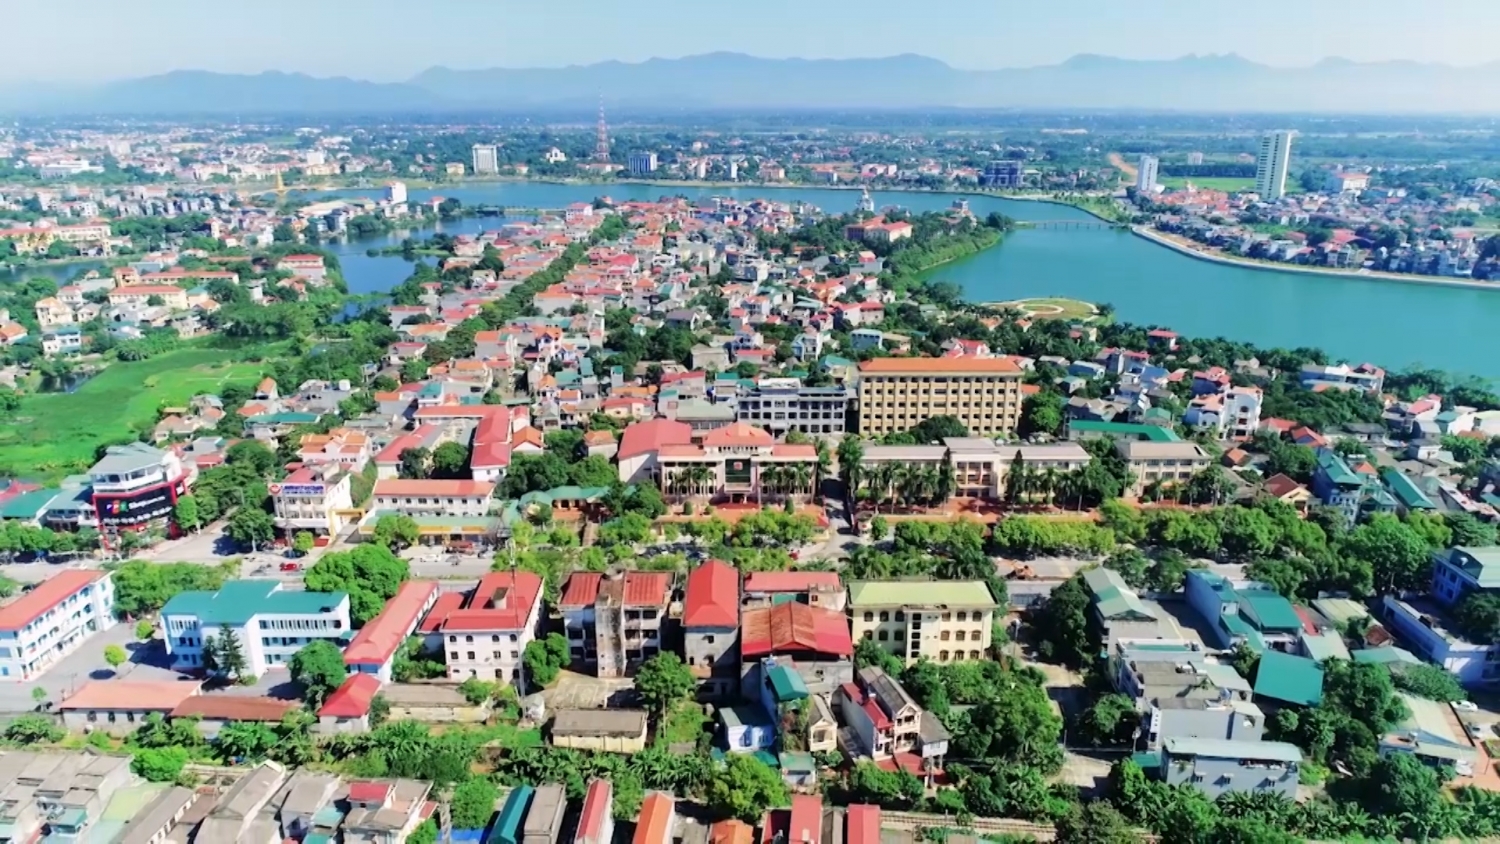 Tin nhanh bất động sản ngày 28/5: Phát Đạt chấm dứt đầu tư dự án gần 1.742 tỉ đồng tại Quảng Ngãi